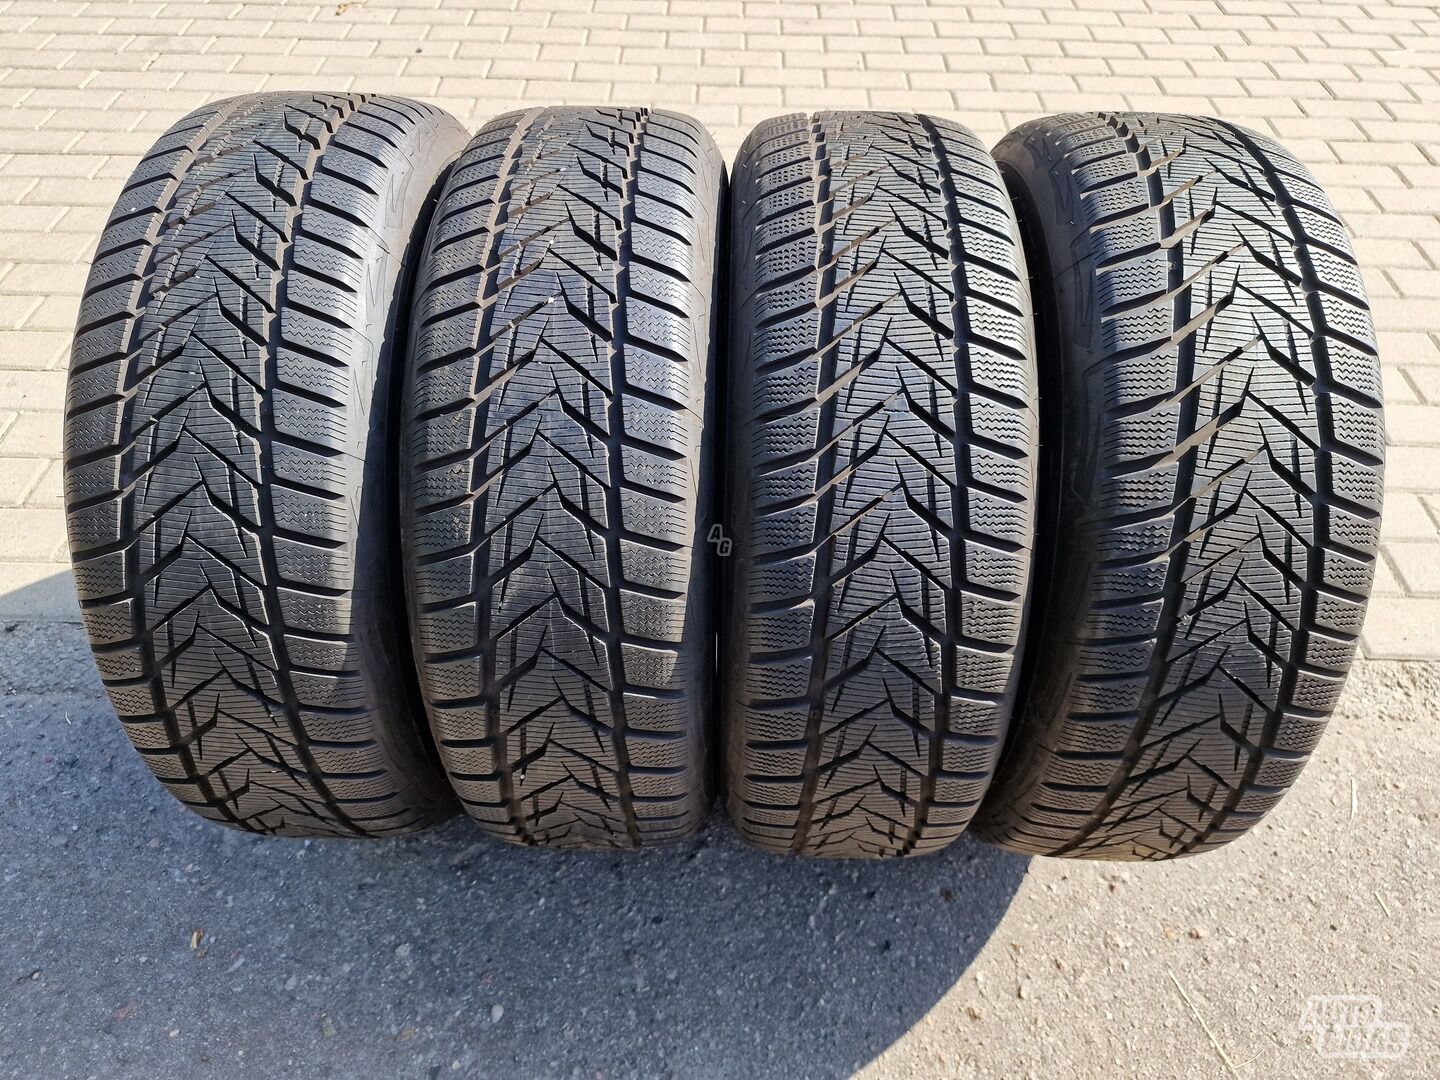 Vredestein Wintrac Xtreme S R17 winter tyres passanger car